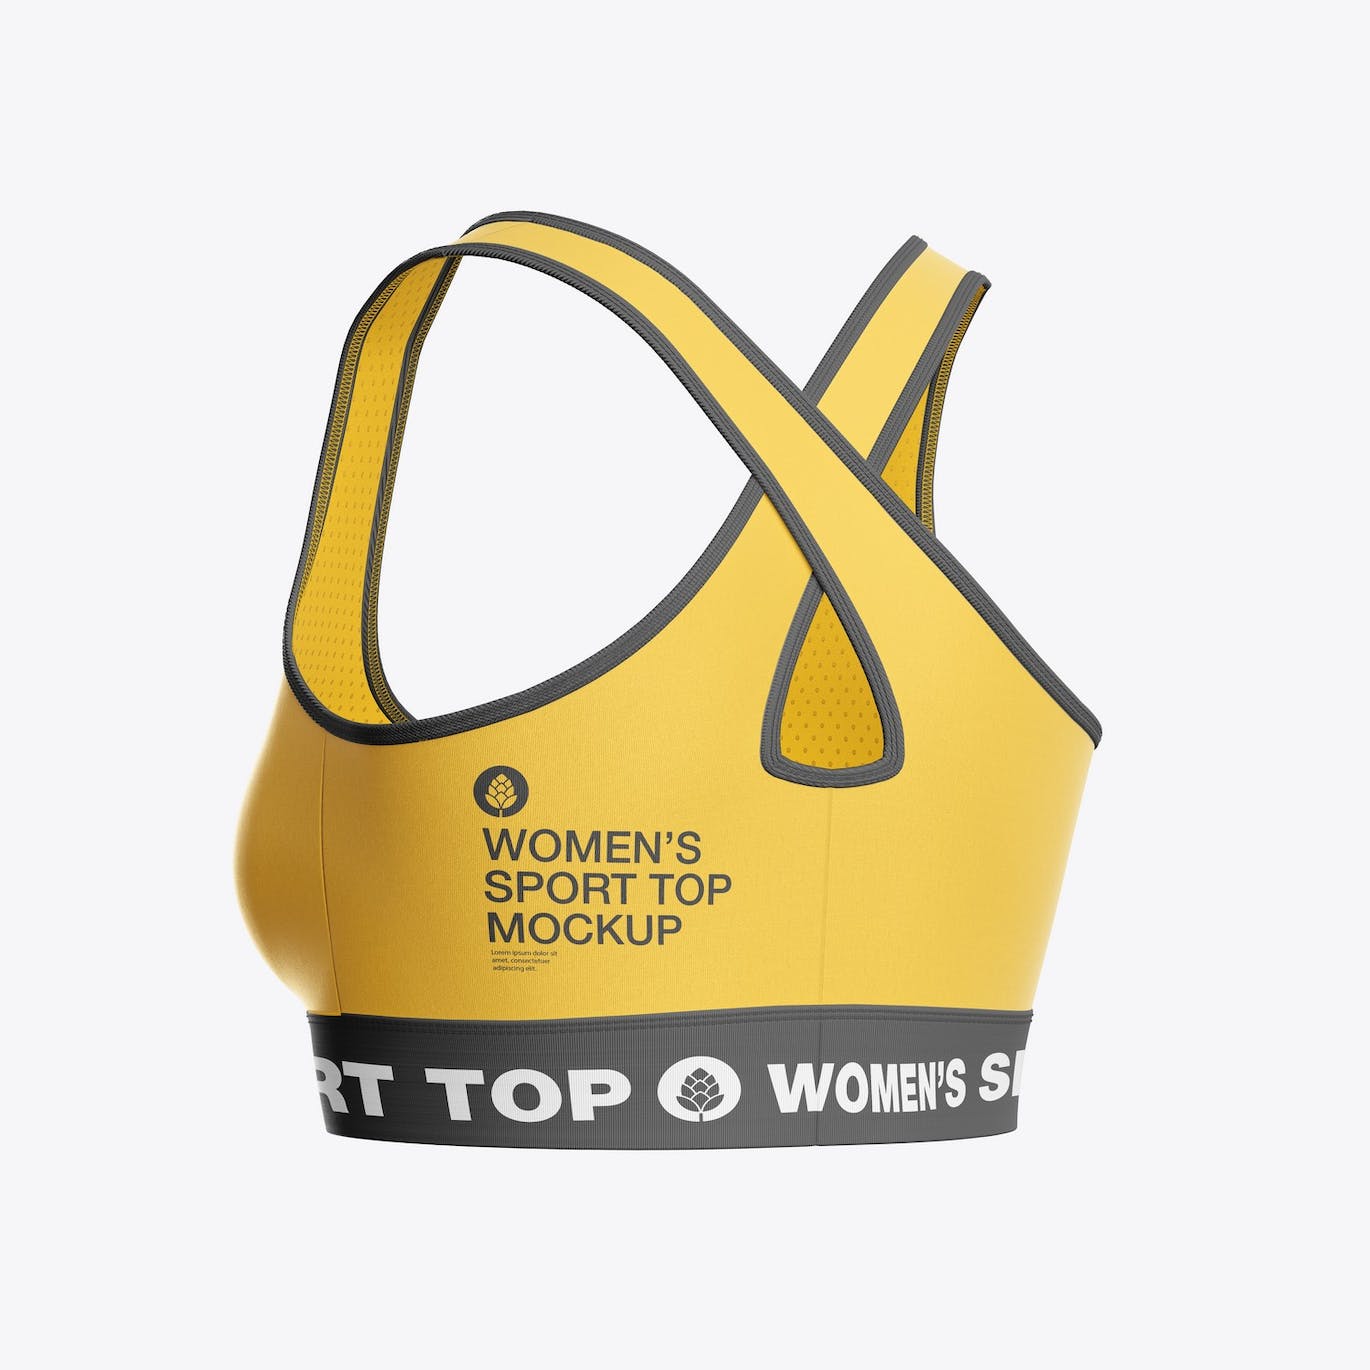 女子运动内衣品牌设计样机 Women’s Sports Top Mockup 样机素材 第4张